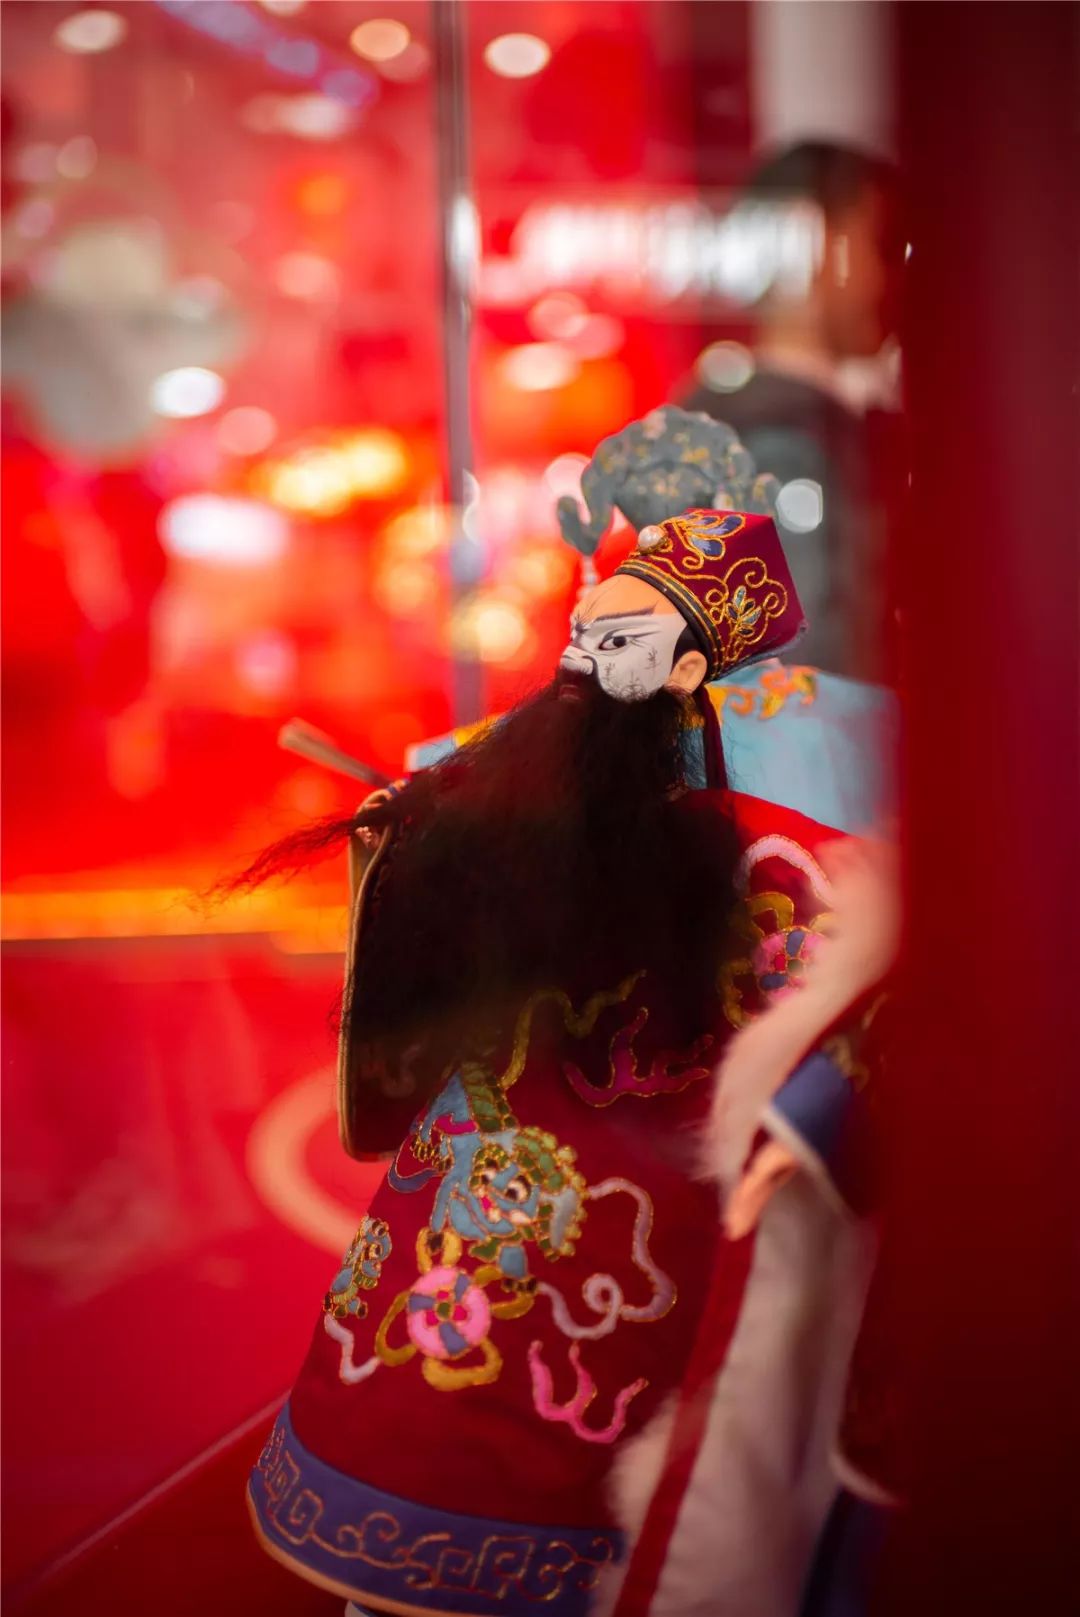 新春主题展览活动掌中木偶带你了解深厚的中国传统文化 美陈网站 美陈前沿 